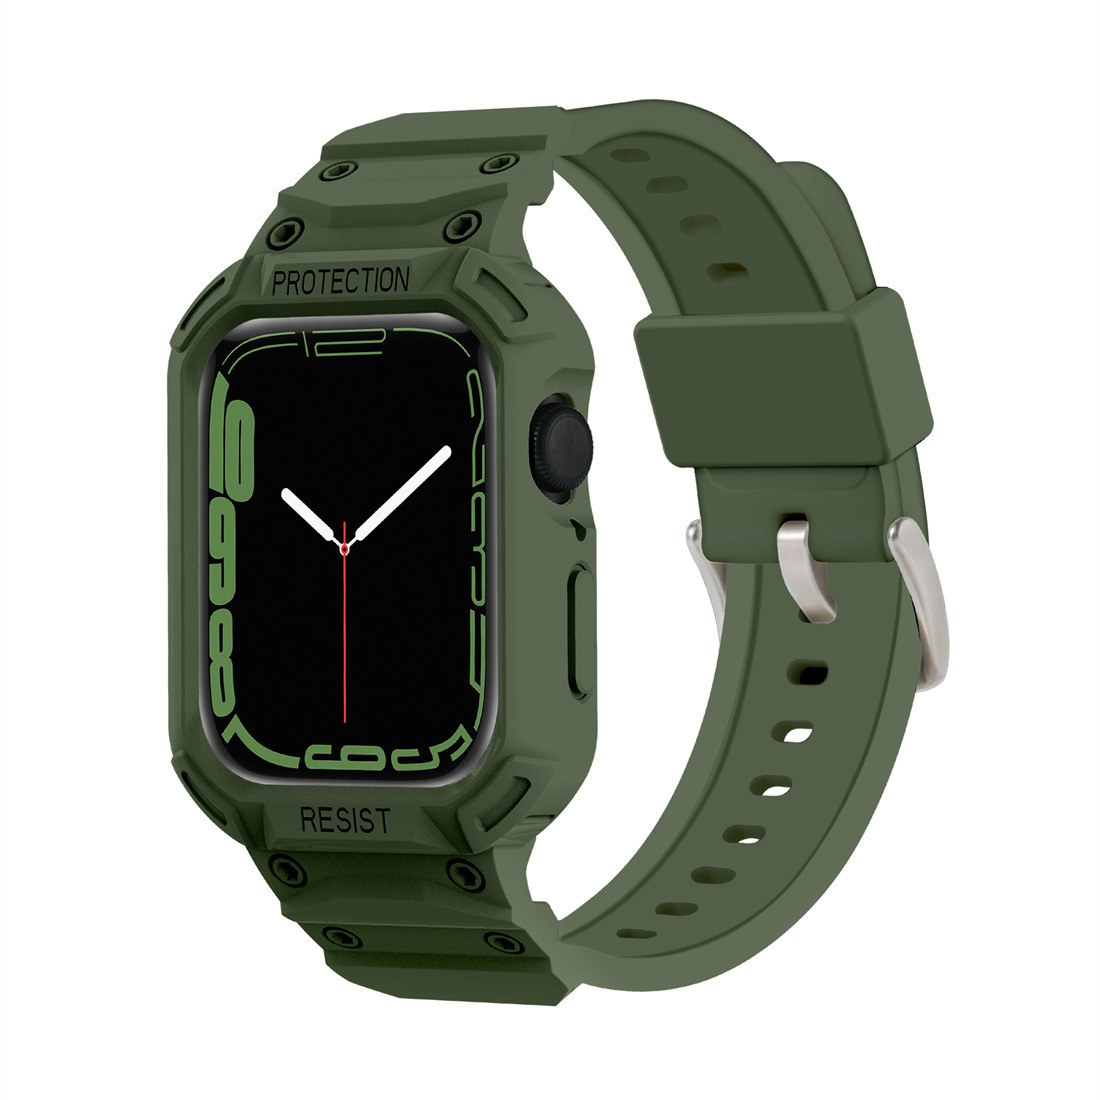 Ốp Case Kèm Dây Đeo Kiểu Gshock Kai dành cho Đồng Hồ Apple Watch- Hàng Chính Hãng - Xanh rêu - 424445mm